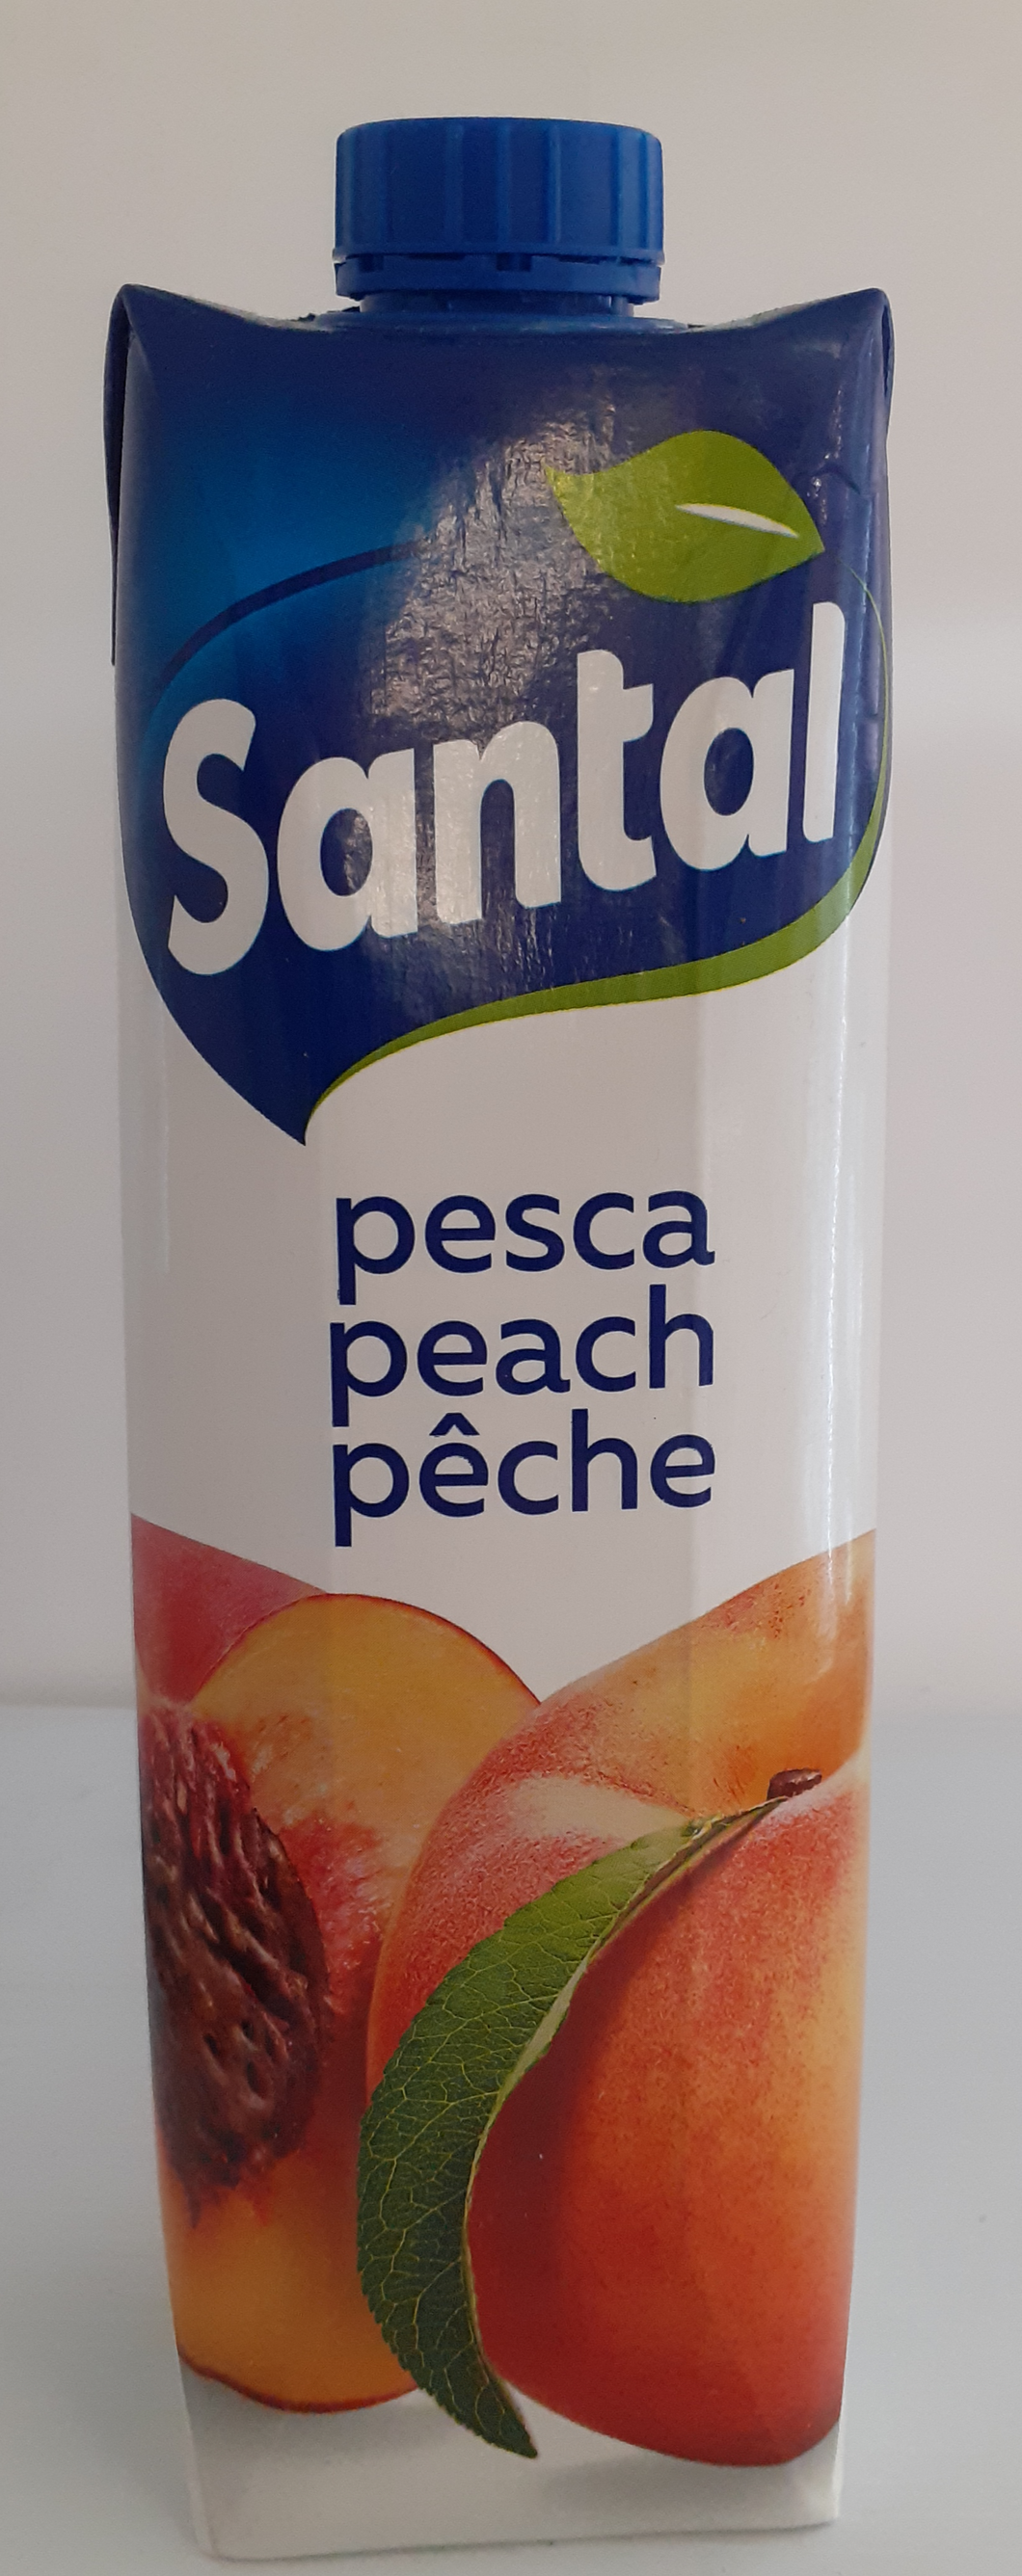 Santal – Pesca (Peach)